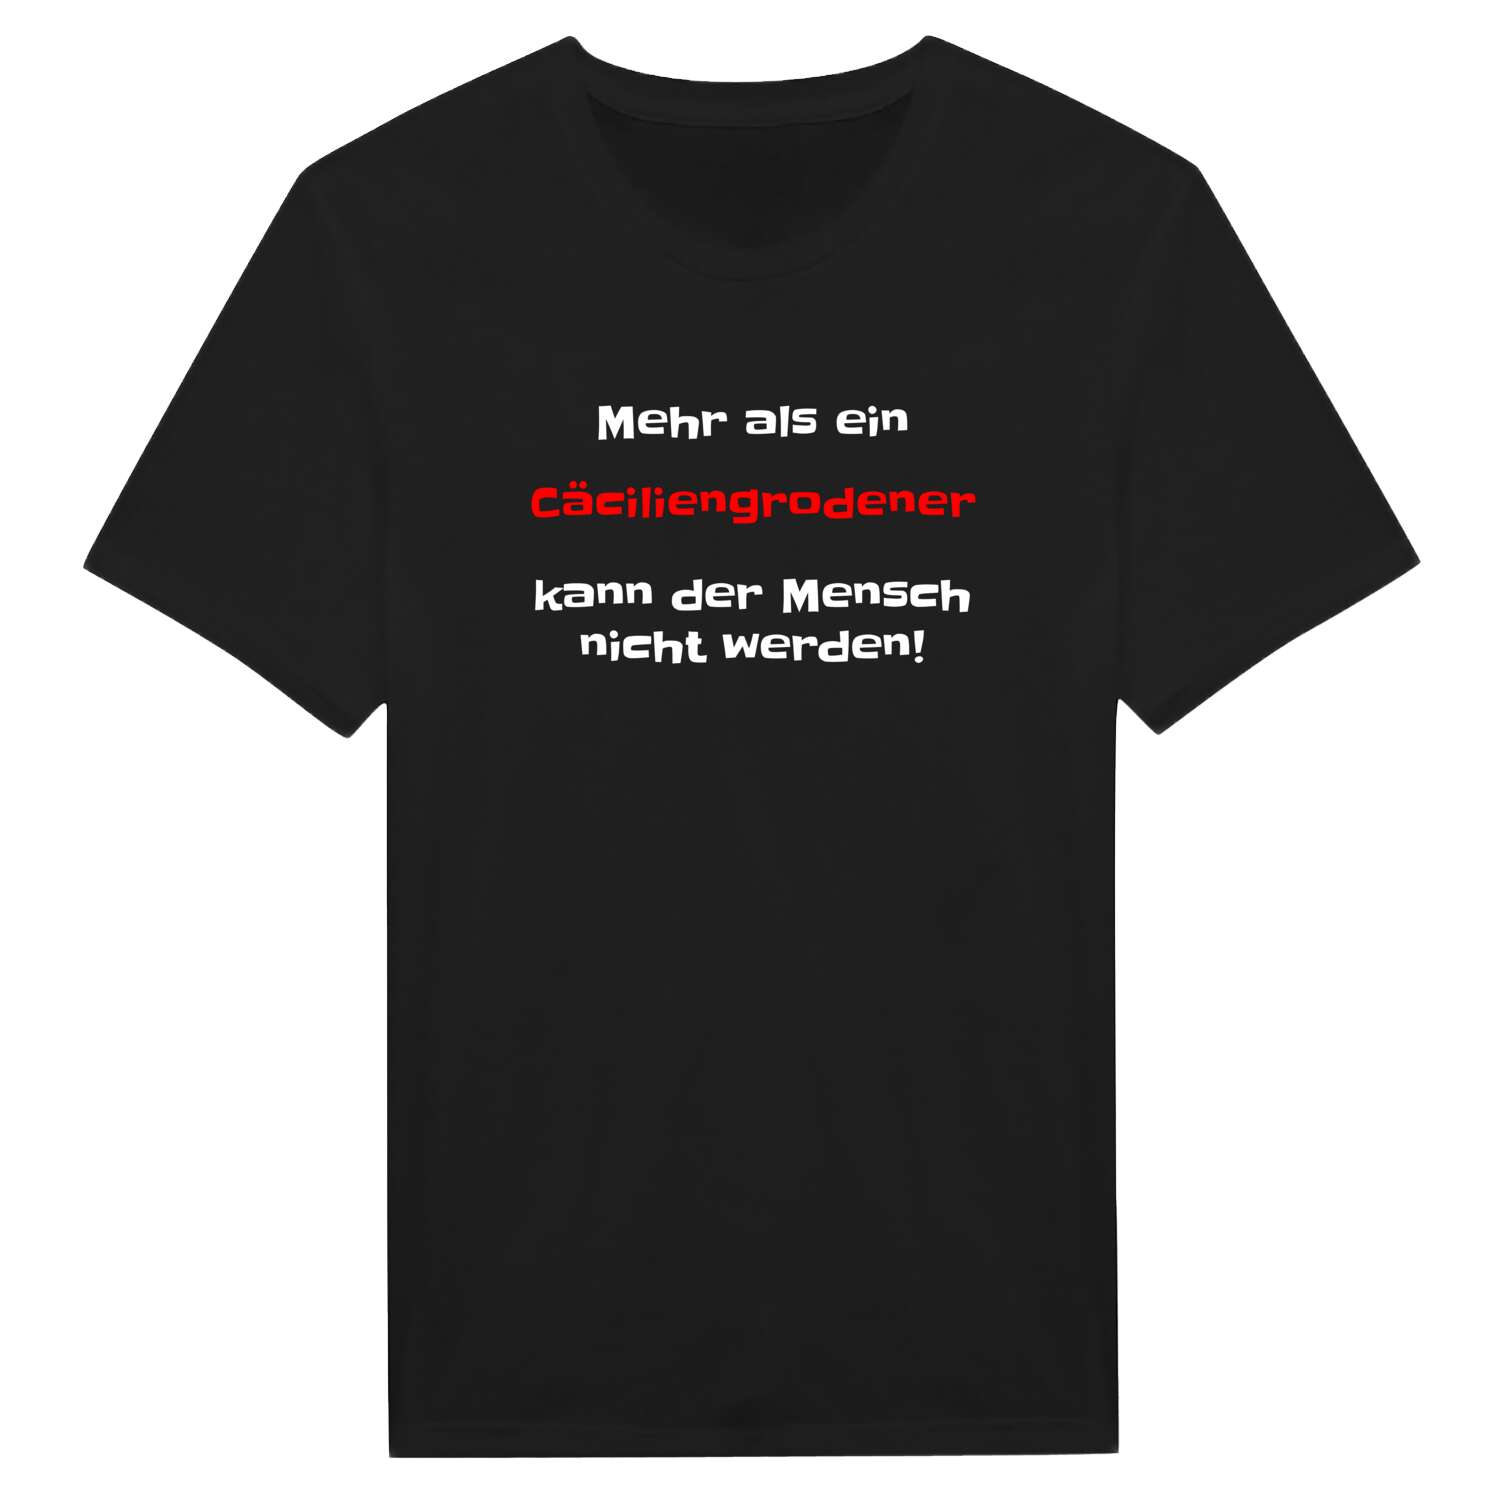 Cäciliengroden T-Shirt »Mehr als ein«